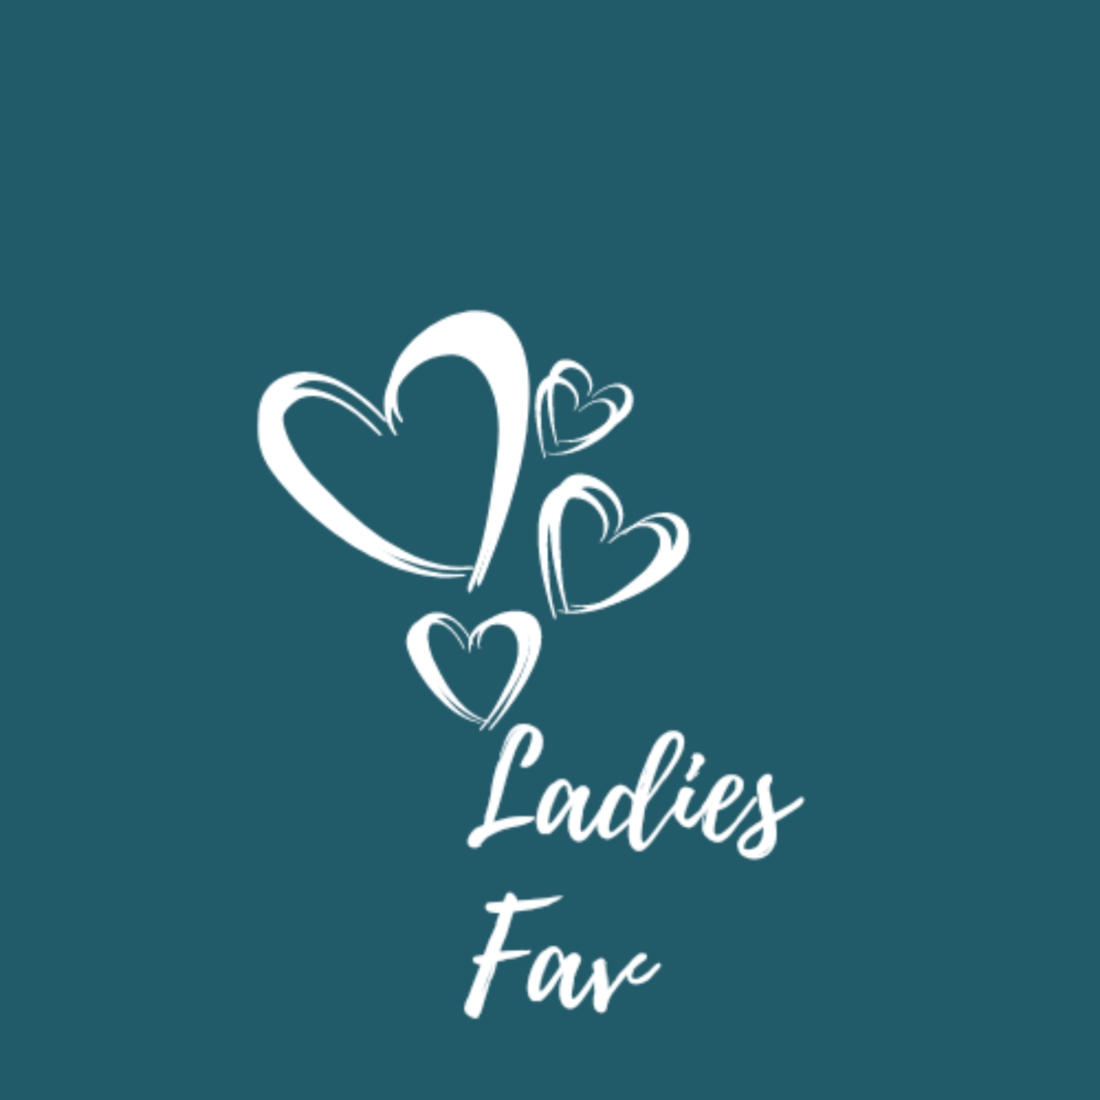 The Ladies Fav Logo Design cover image.